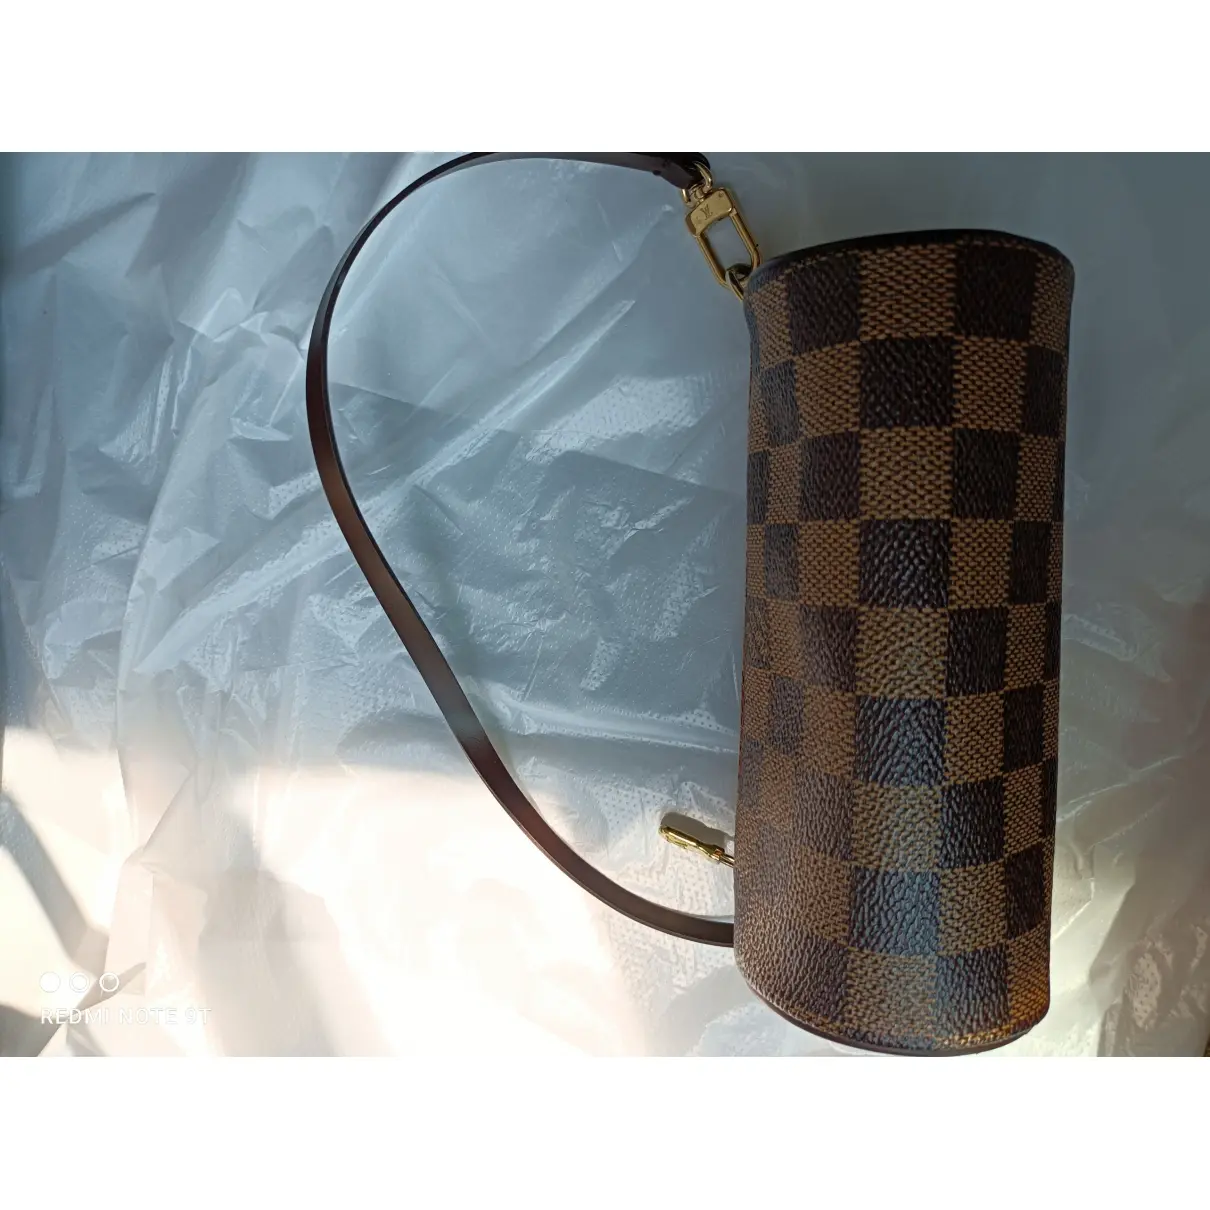 Papillon cloth handbag Louis Vuitton